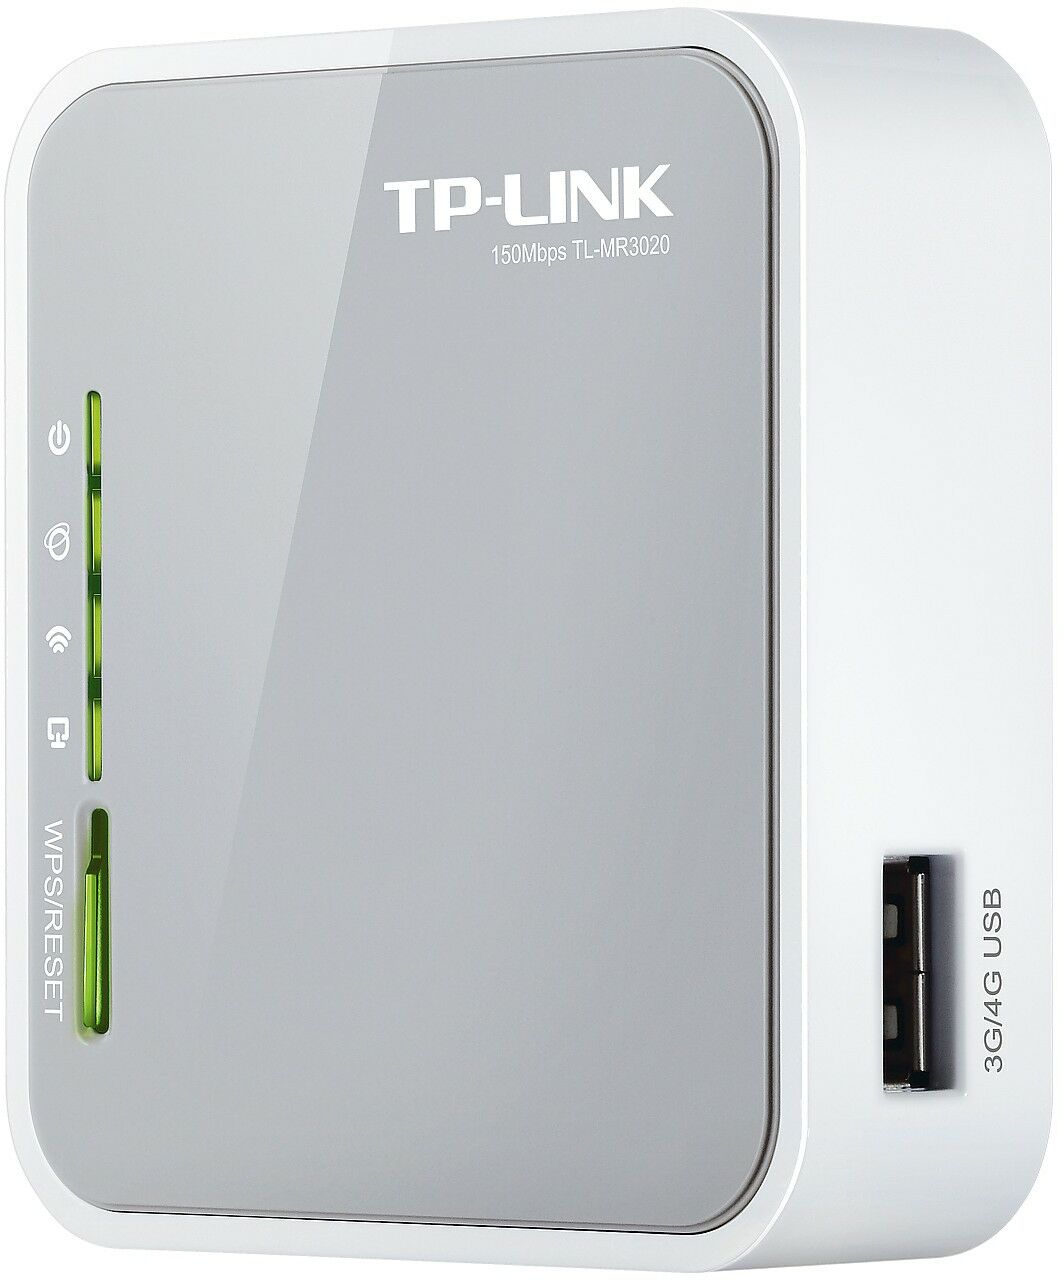 Router TL-MR3020 TP-LINK